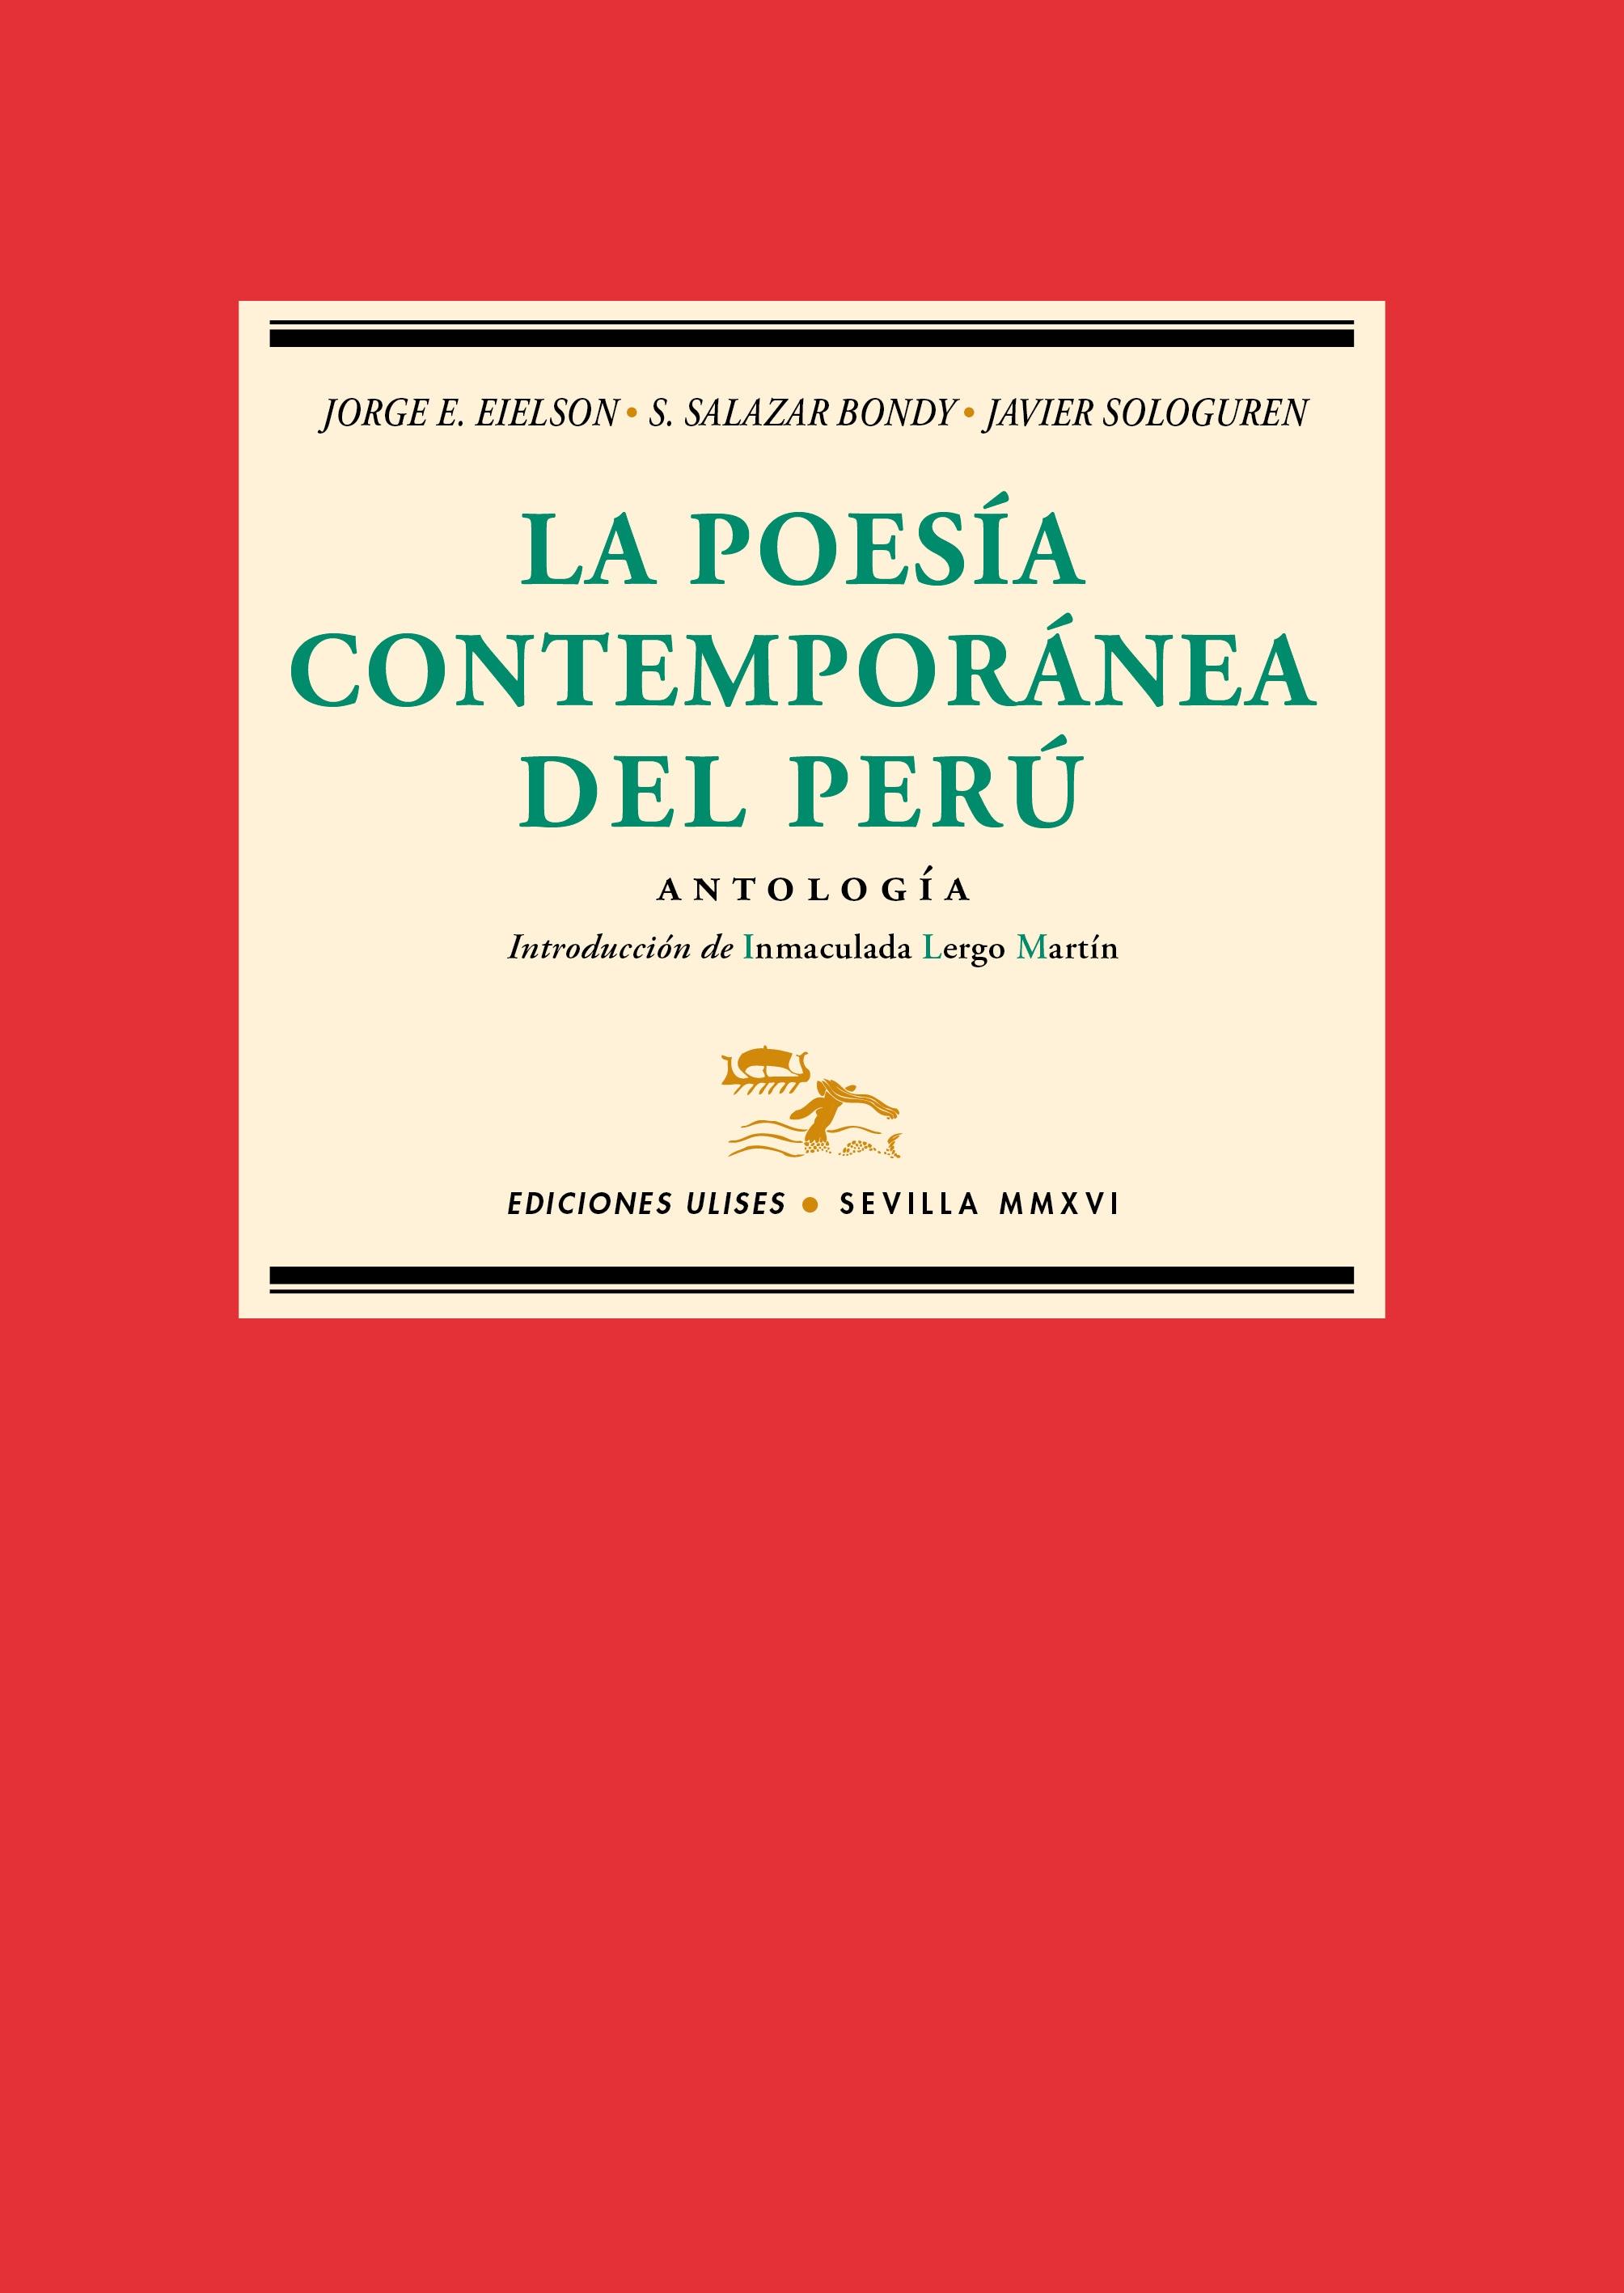 La Poesía Contemporánea del Perú "Antología"